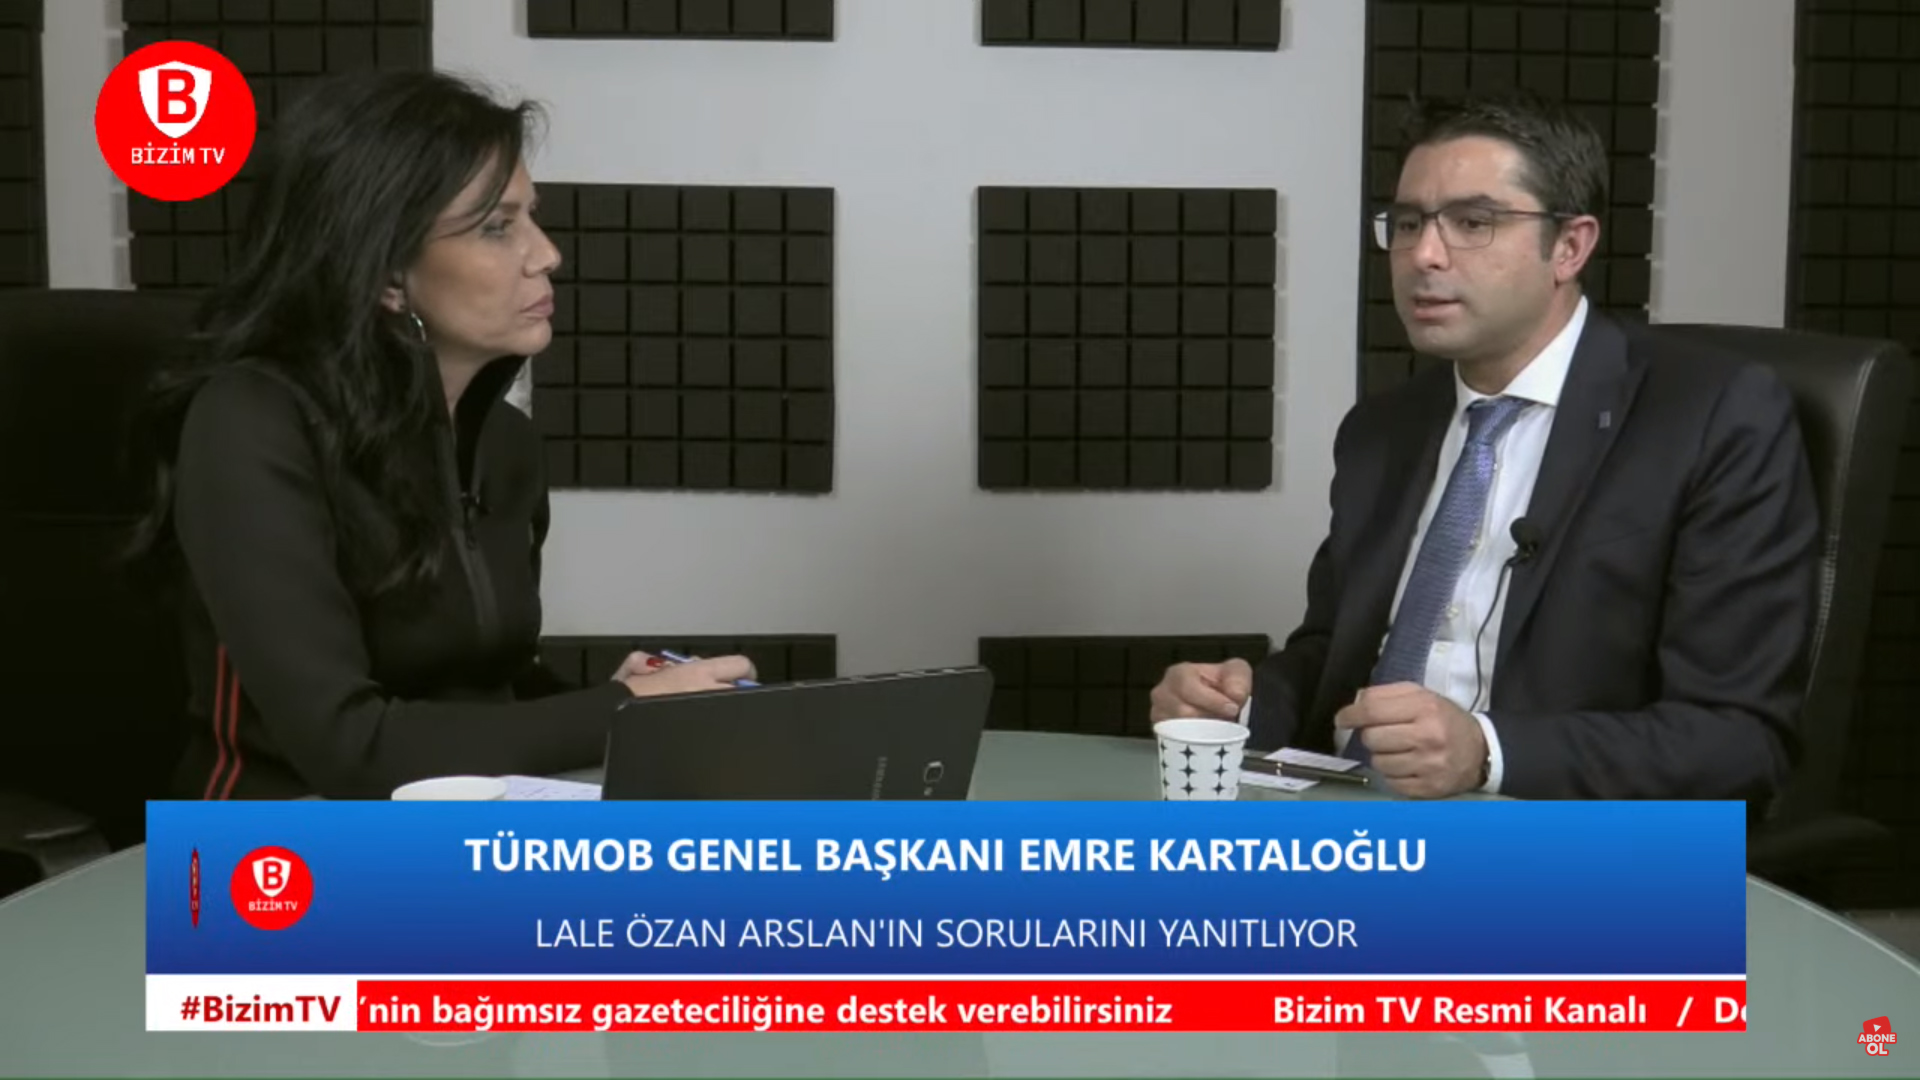 Genel Başkanımız Sayın Emre Kartaloğlu, Bizim TV Kanalında “Vergi Yasalarındaki değişikliklere” ilişkin değerlendirmelerde bulundu.